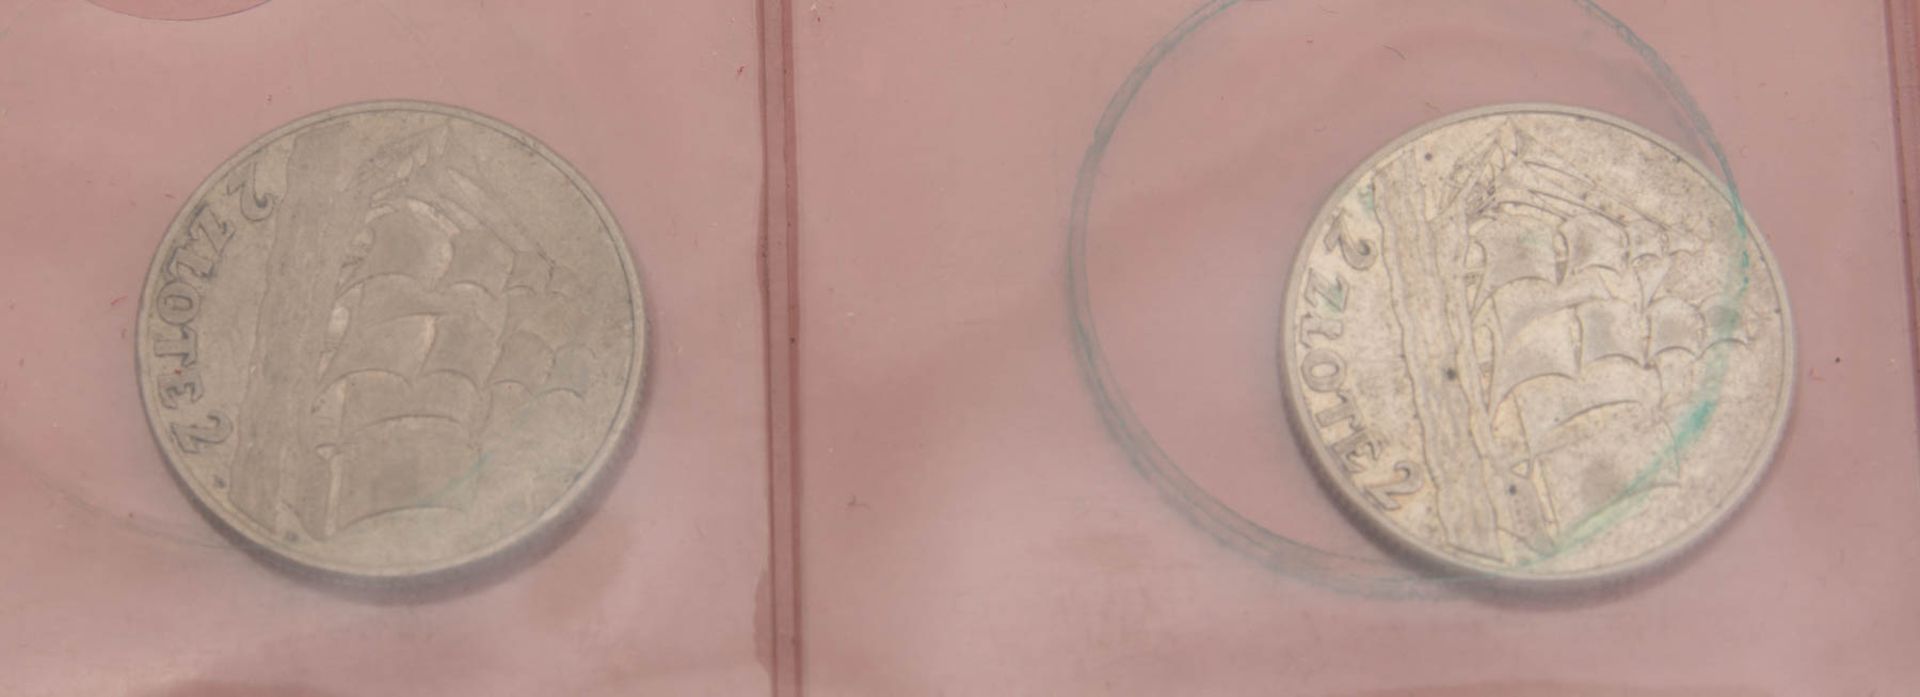 Gut bestücktes Münzalbum, viel hist. Silber.Über 90 Münzen.darunter viel Silbe - Image 6 of 8